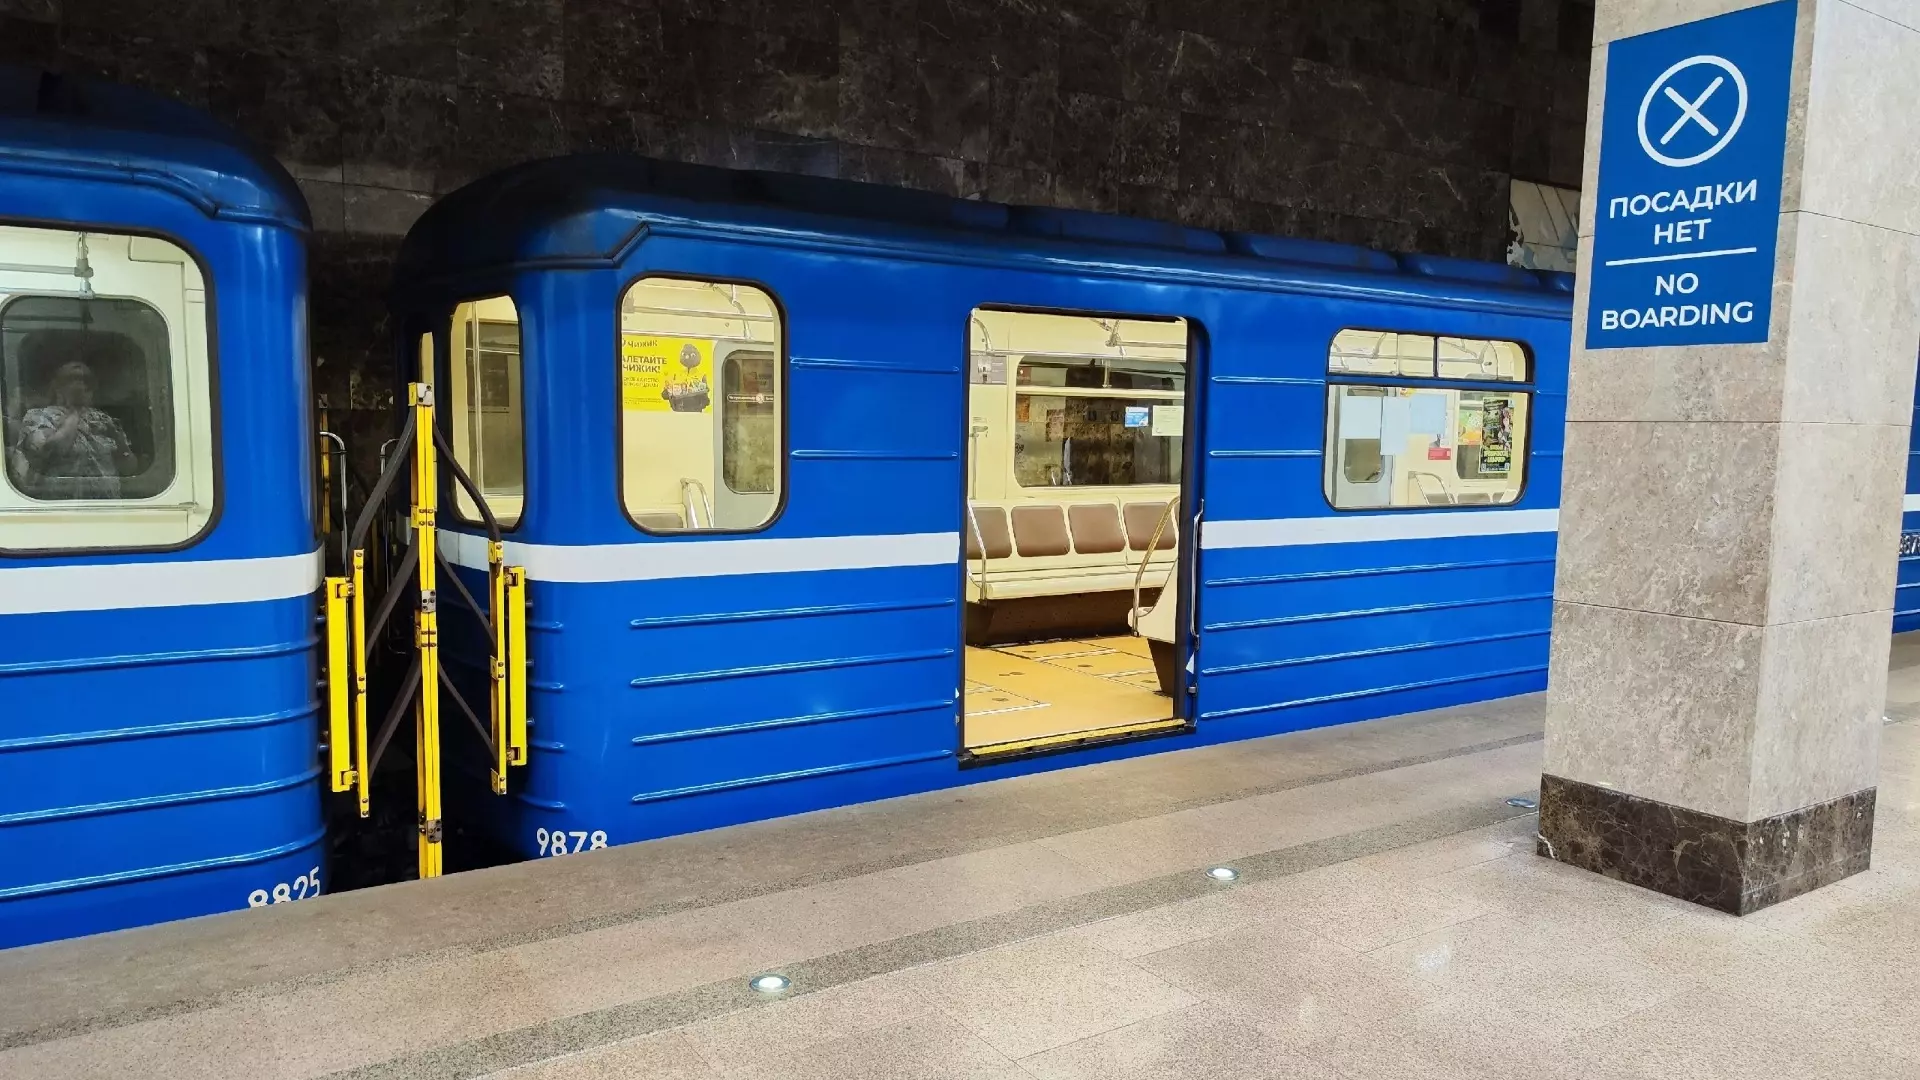 169 предметов забыли нижегородцы в метро